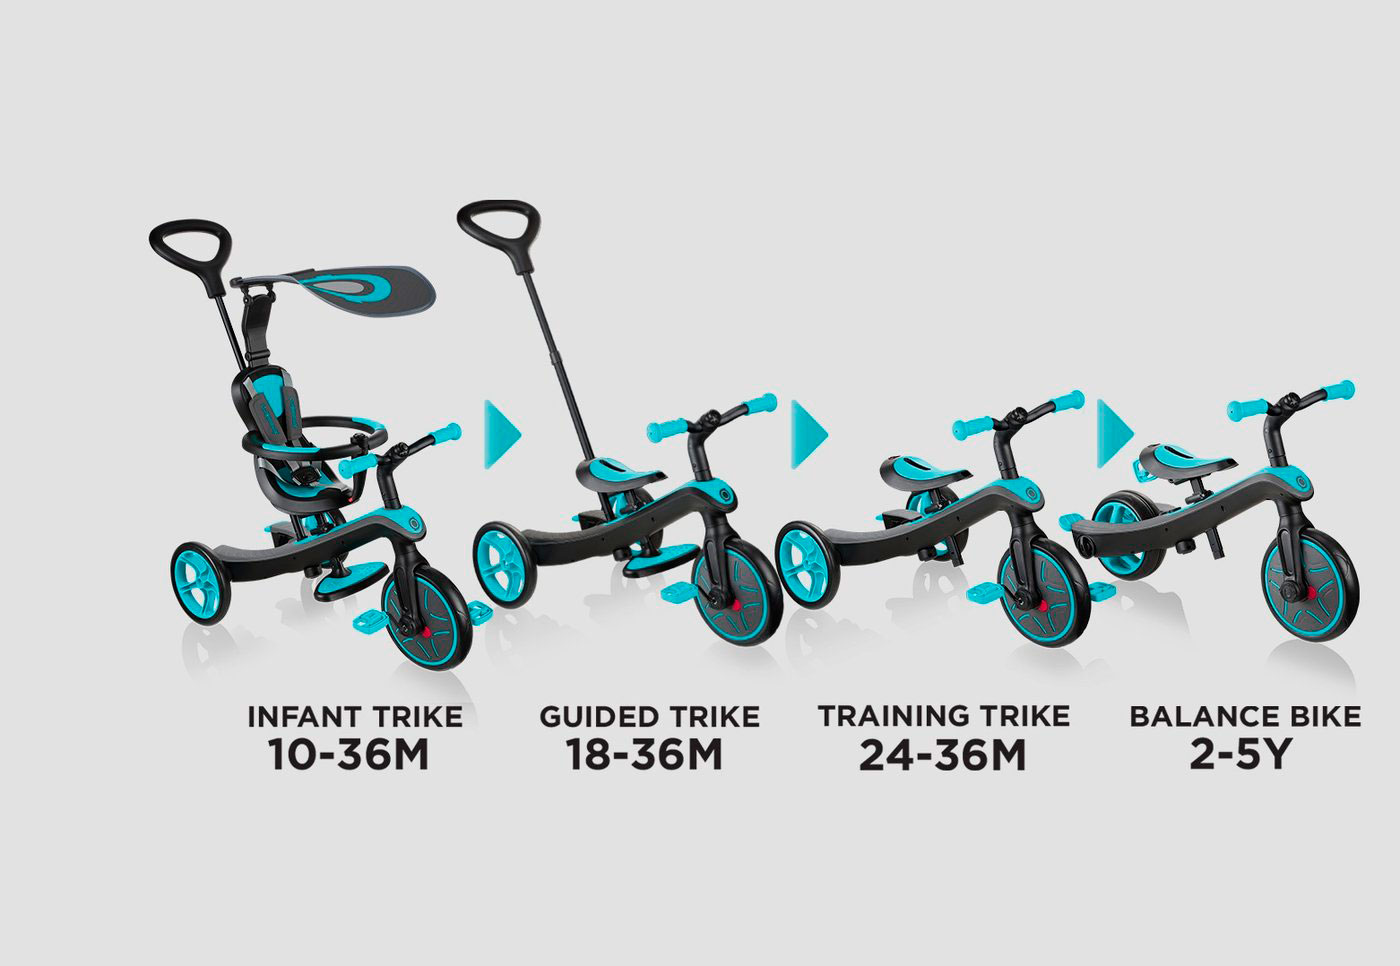 Bicicleta de equilibrio para bebés de 6 a 24 meses, bicicleta de equilibrio  resistente para niñas de 1 año, regalo perfecto como primera bicicleta o